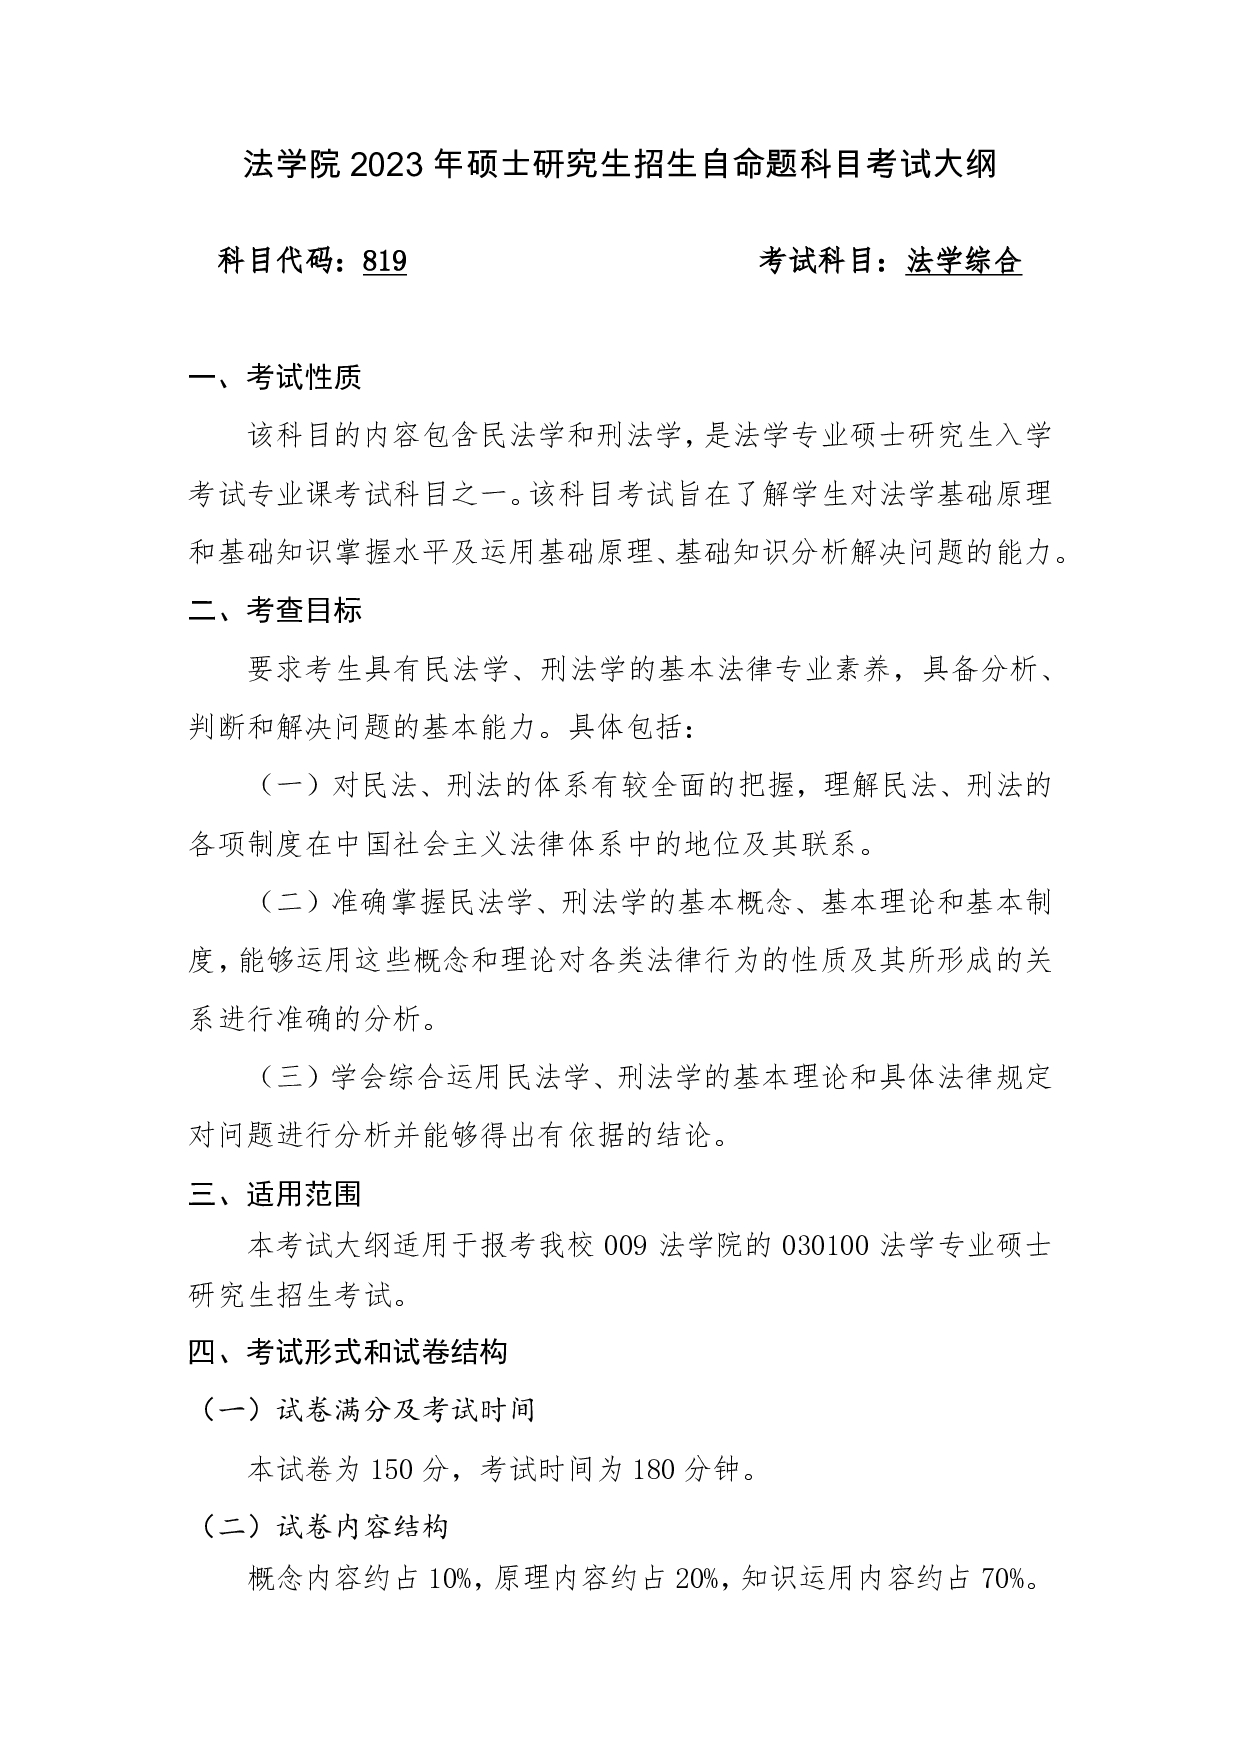 2023考研大纲：桂林电子科技大学2023年考研科目 819（009法学综合） 考试大纲第1页